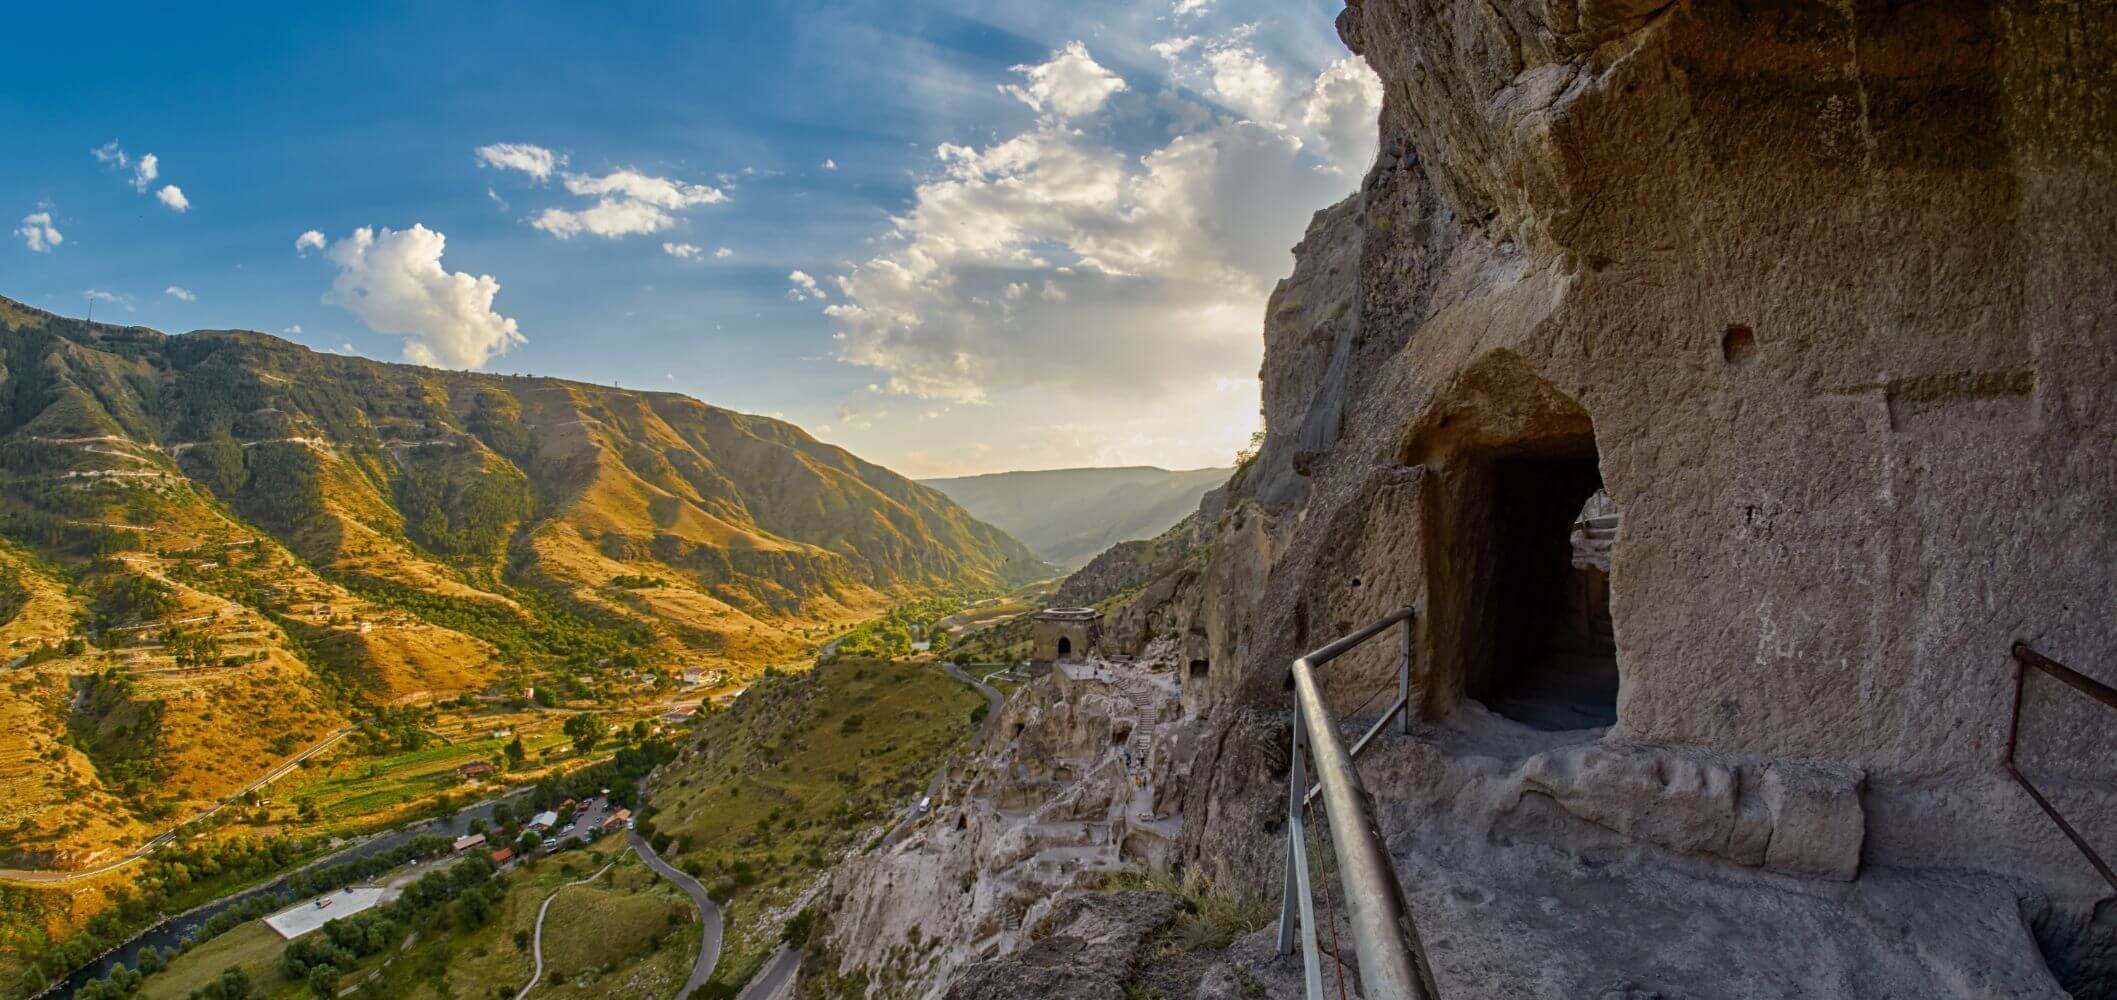 1-Day Georgia: Tour to the Cave town of Vardzia